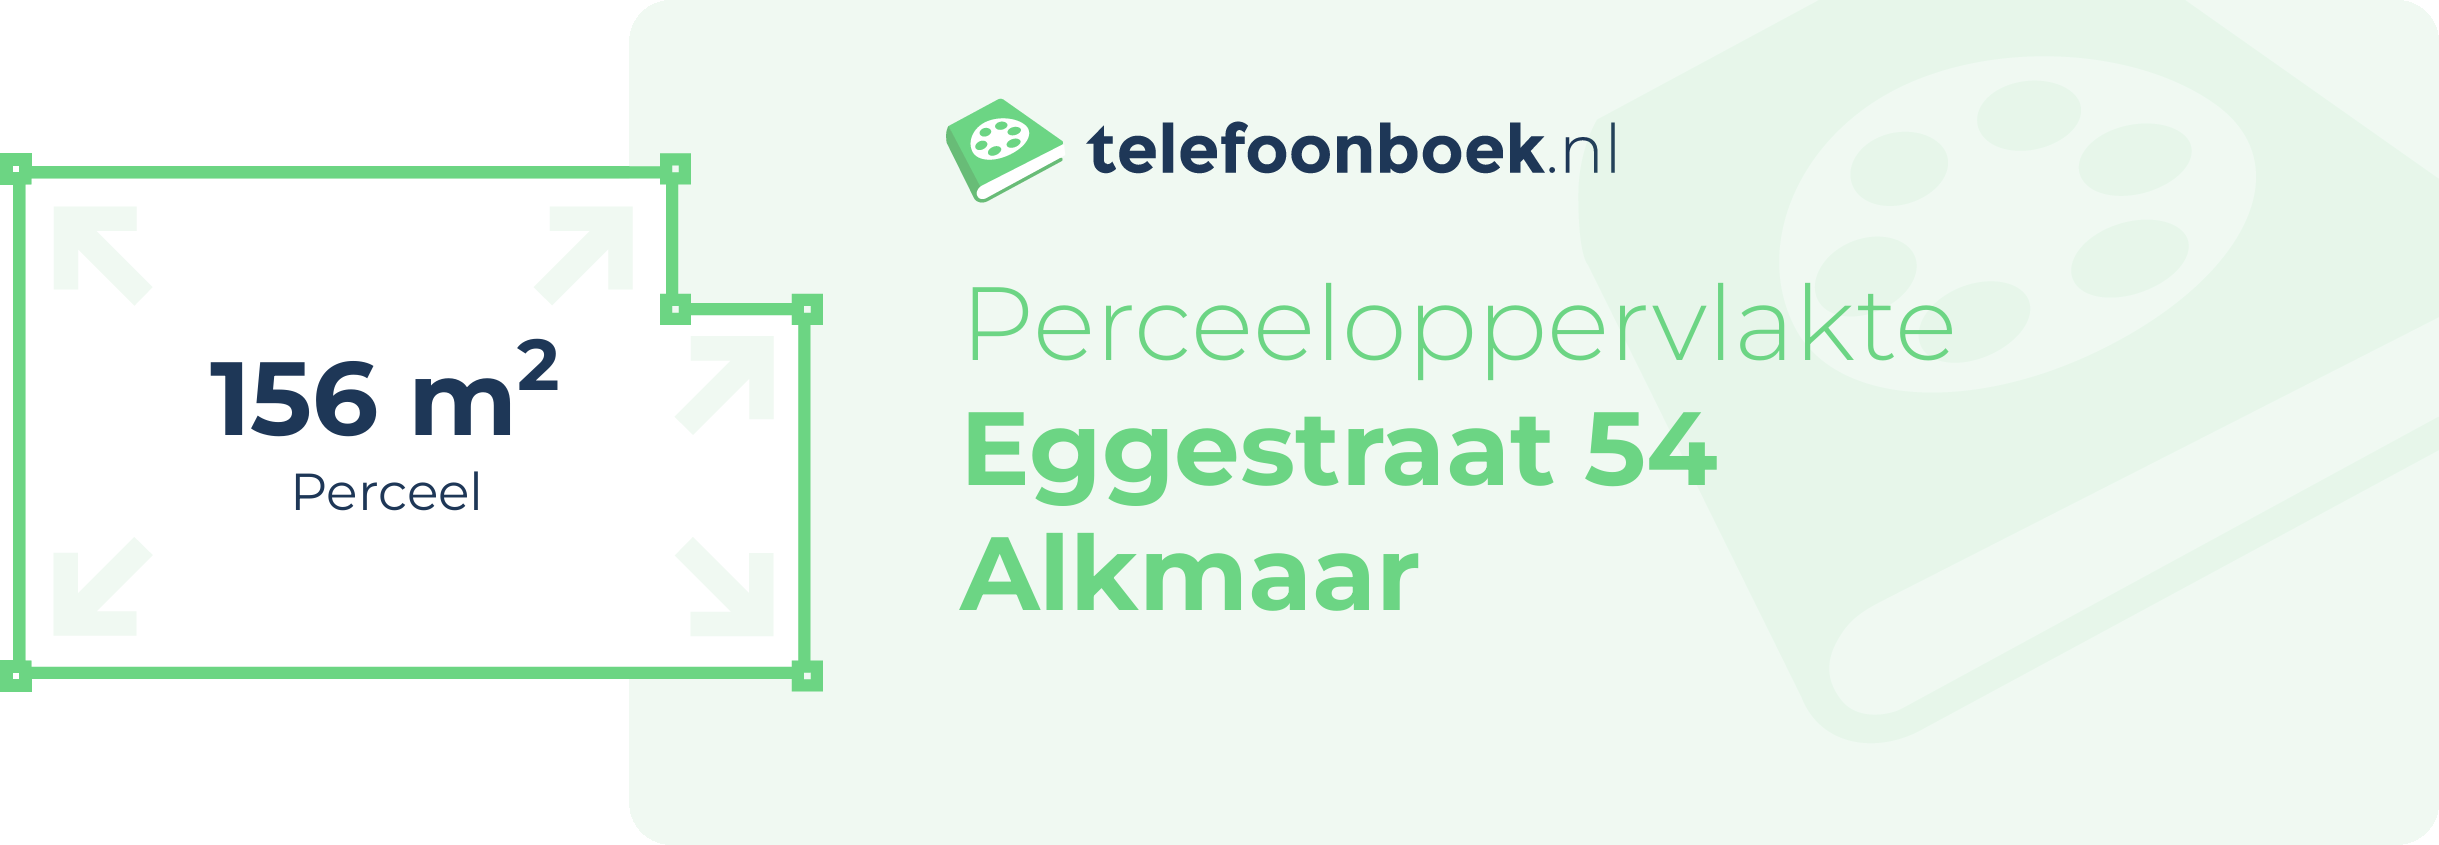 Perceeloppervlakte Eggestraat 54 Alkmaar